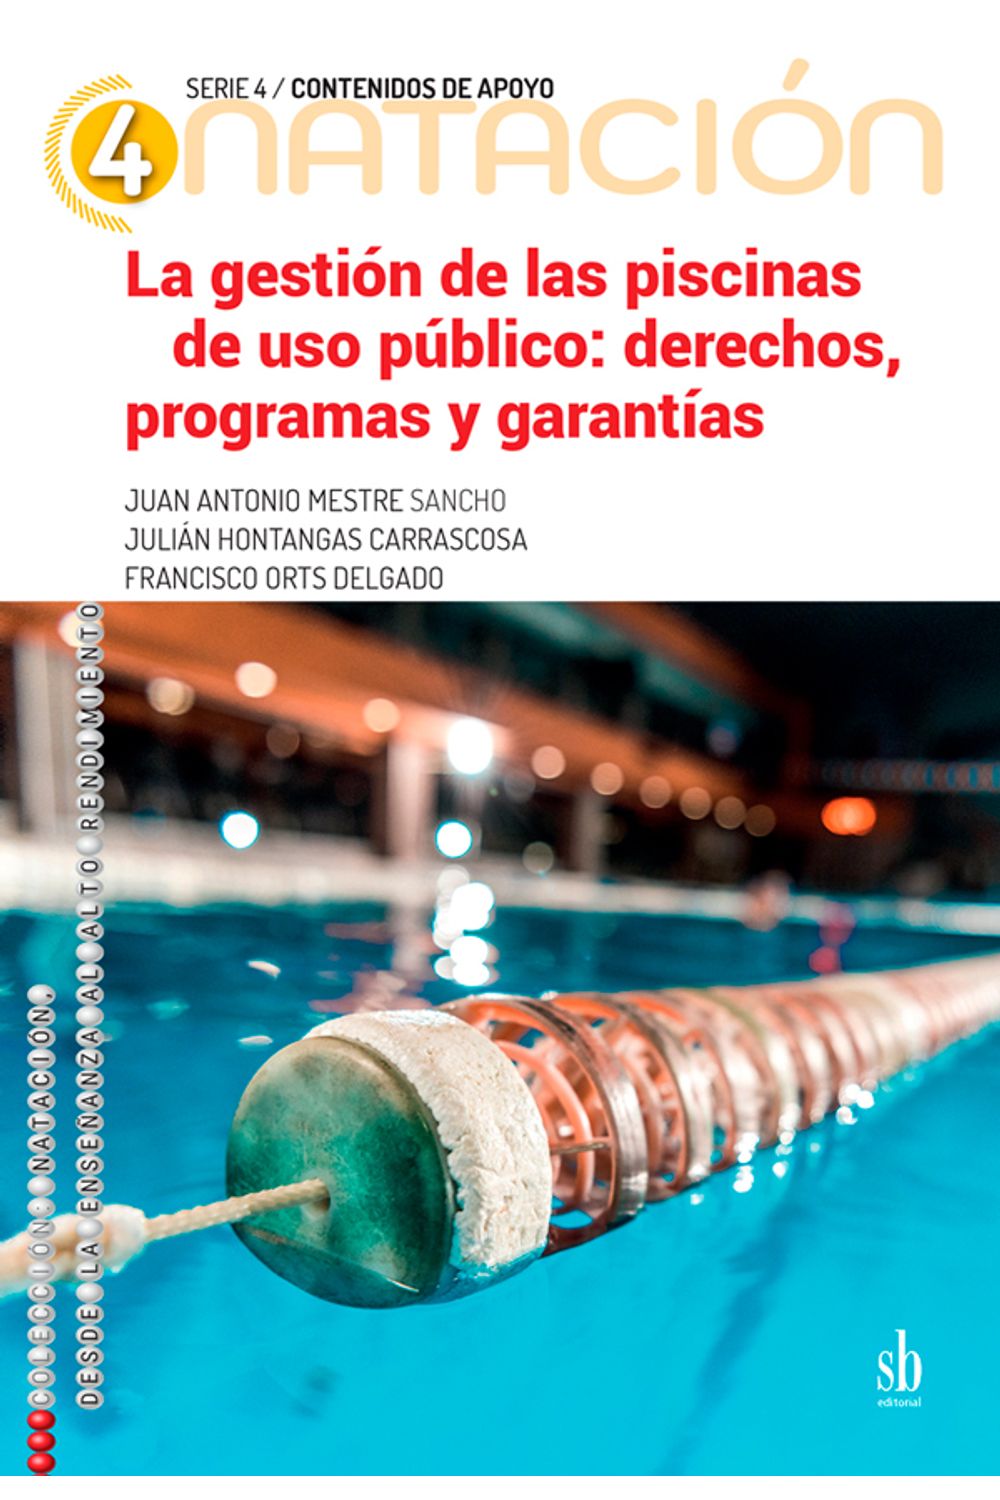 bm-la-gestion-de-las-piscinas-de-uso-publico-editorial-sb-9789874434753